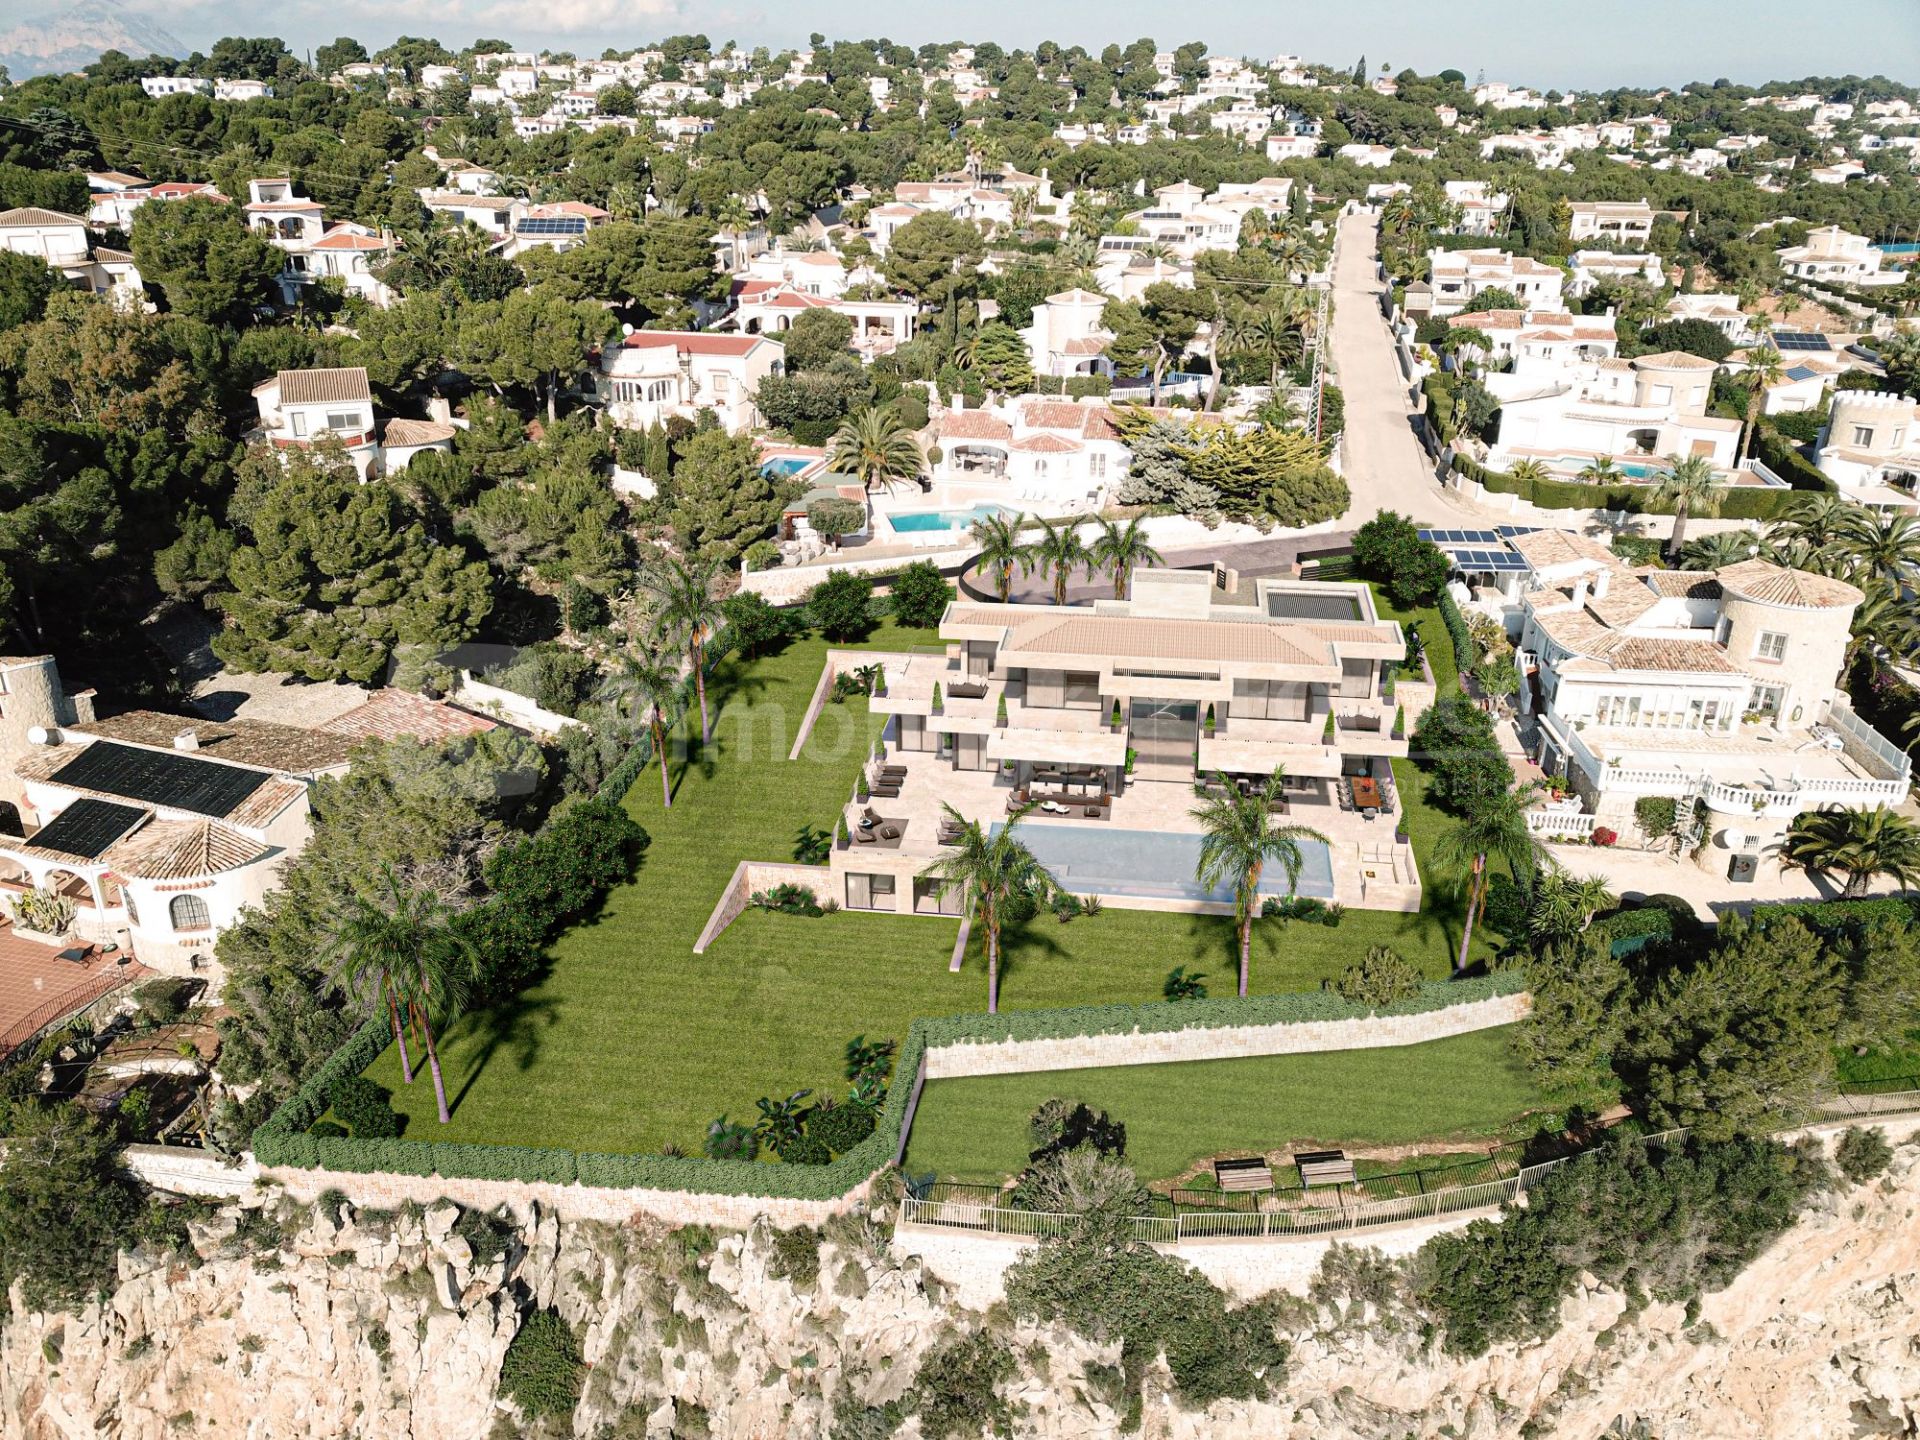 Proyecto - Villa moderna en La Siesta, Jávea (Alicante), con impresionantes vistas al Mediterráneo.